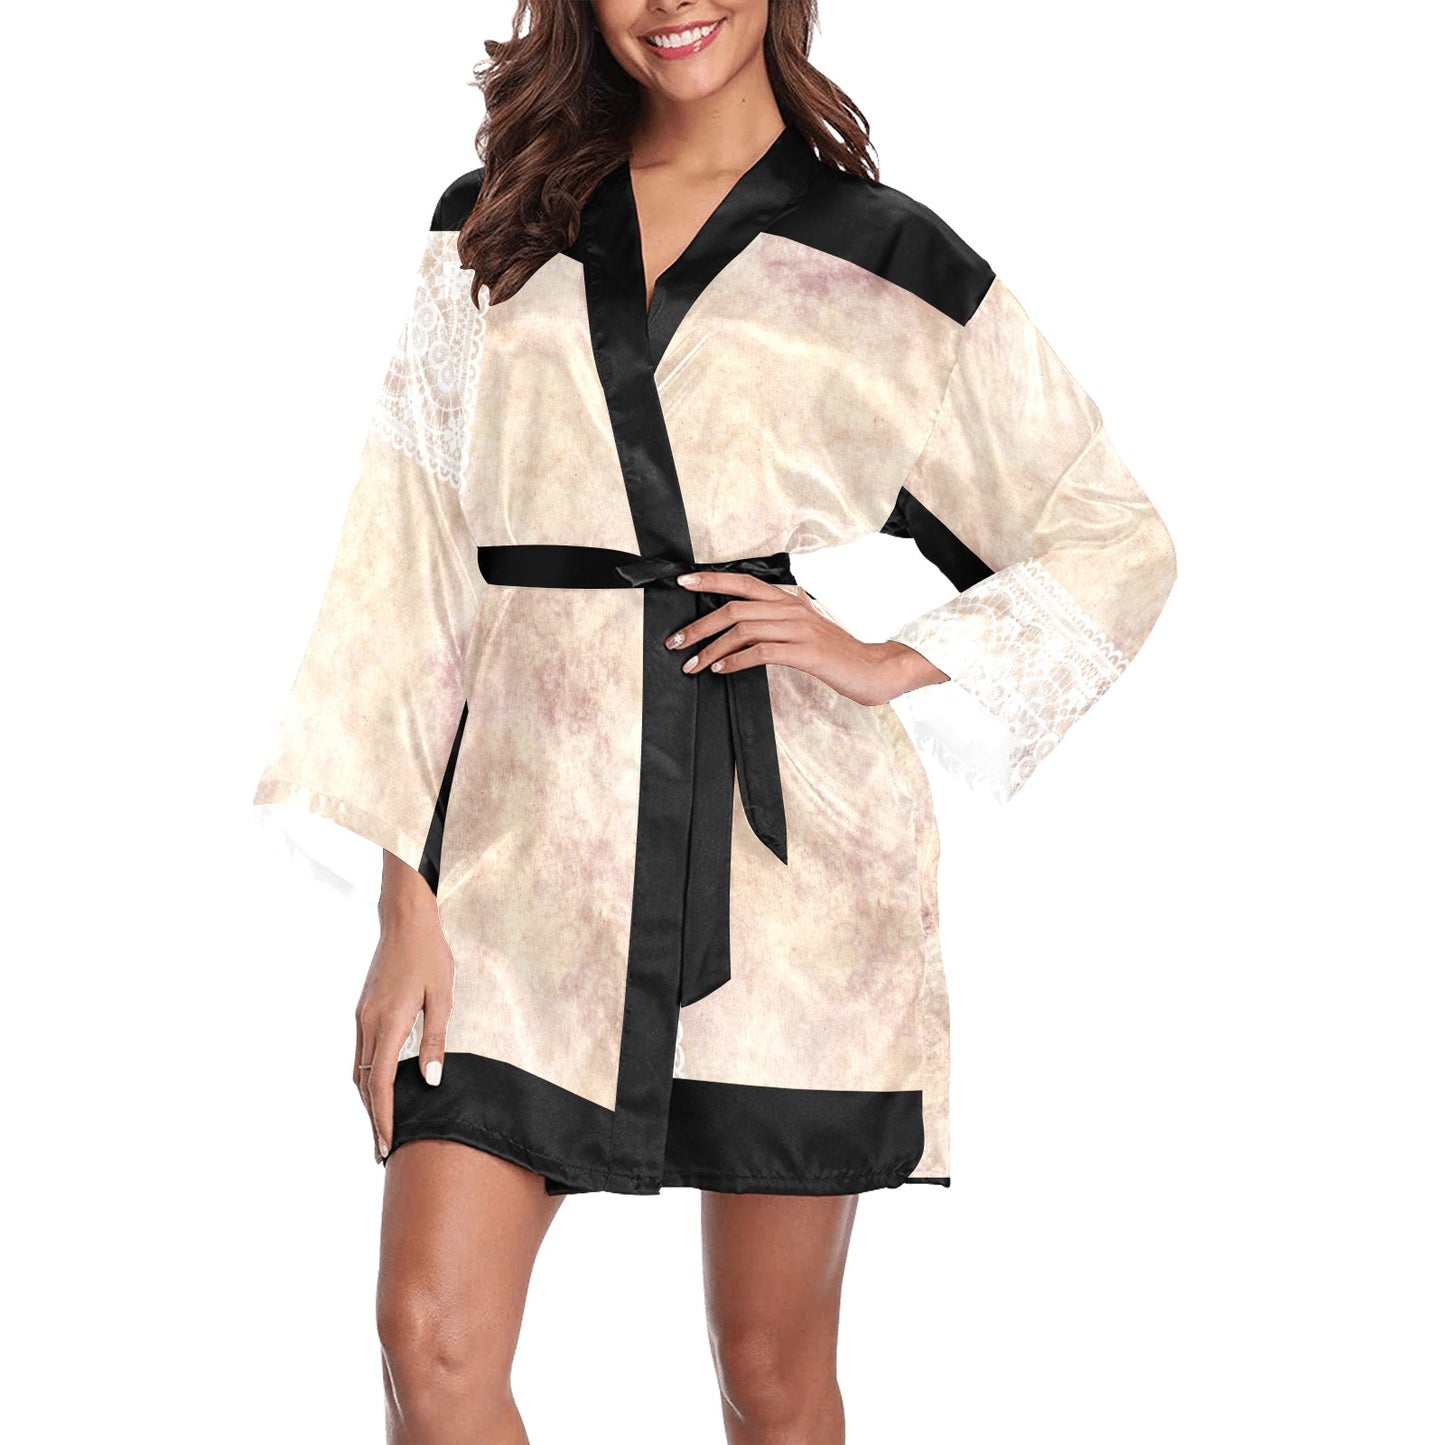 Victorian Lace Kimono Robe, Black or White Trim, Sizes XS to 2XL, Design 35